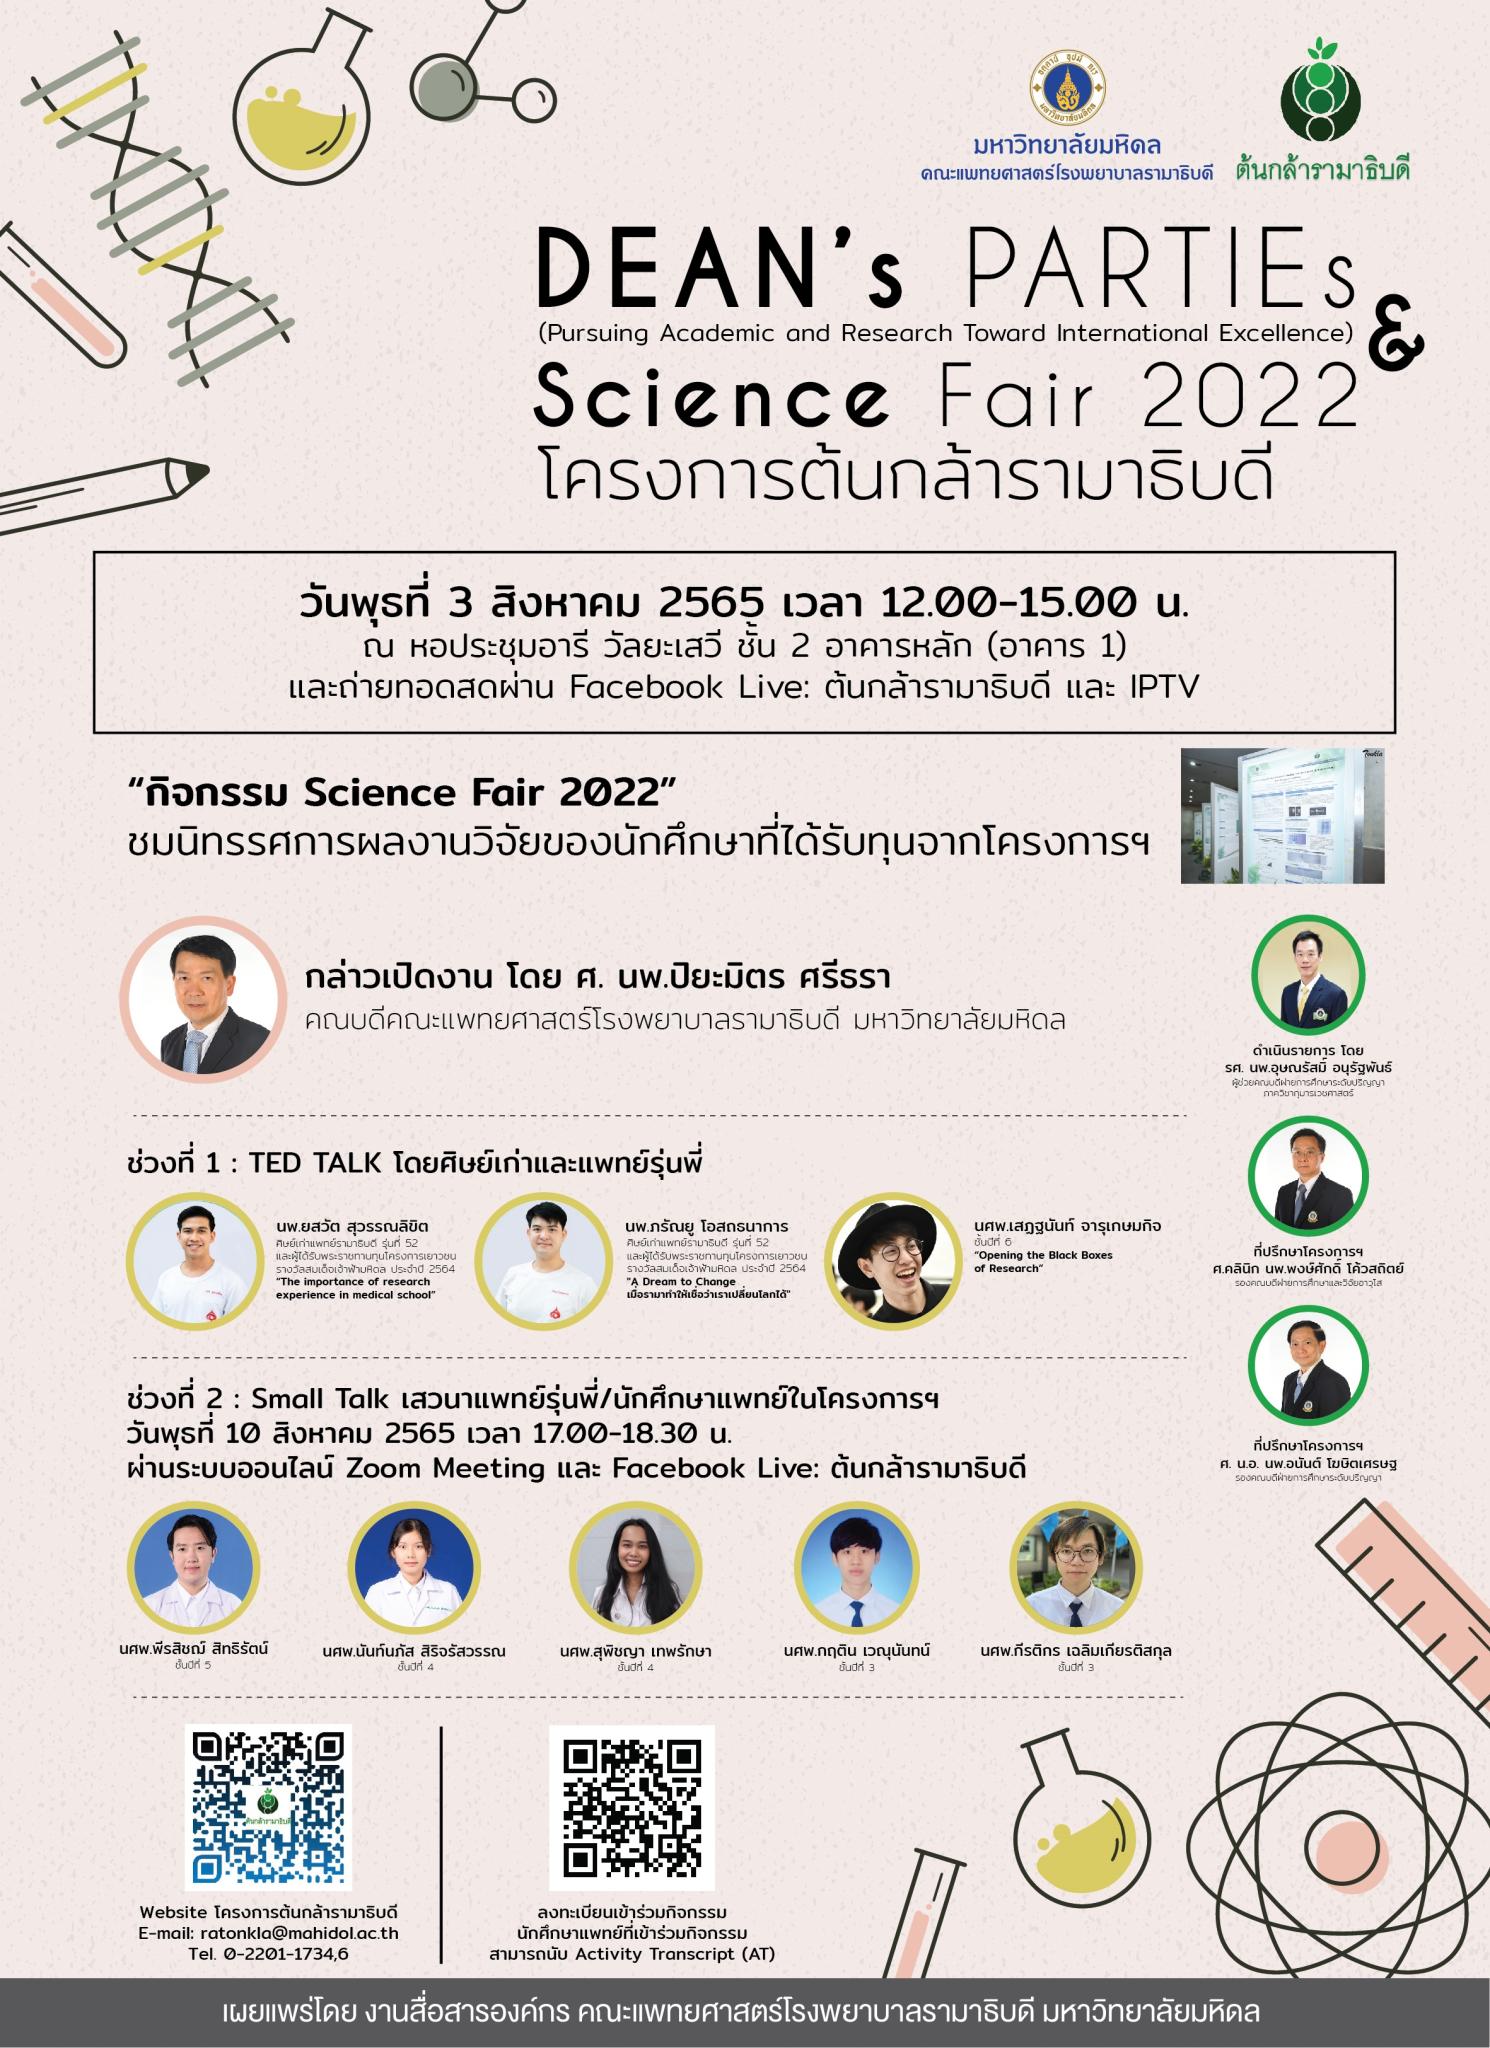 DEAN's PARTIEs & Science Fair 2022